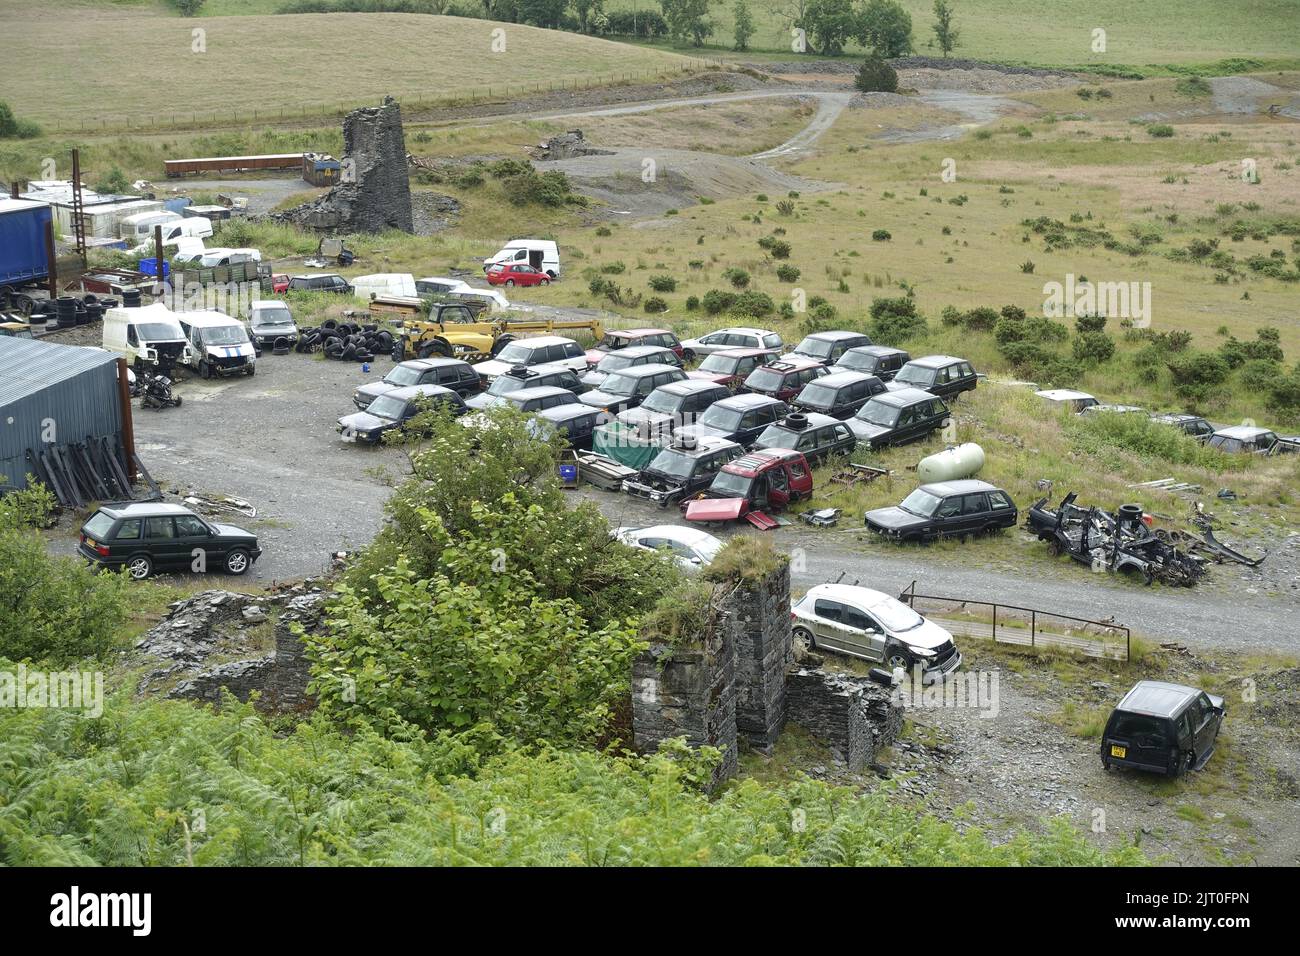 Un grand nombre de Range Rover d'occasion se trouvent sur le site de démantèlement dans une campagne éloignée près de Trisant West Wales UK Banque D'Images